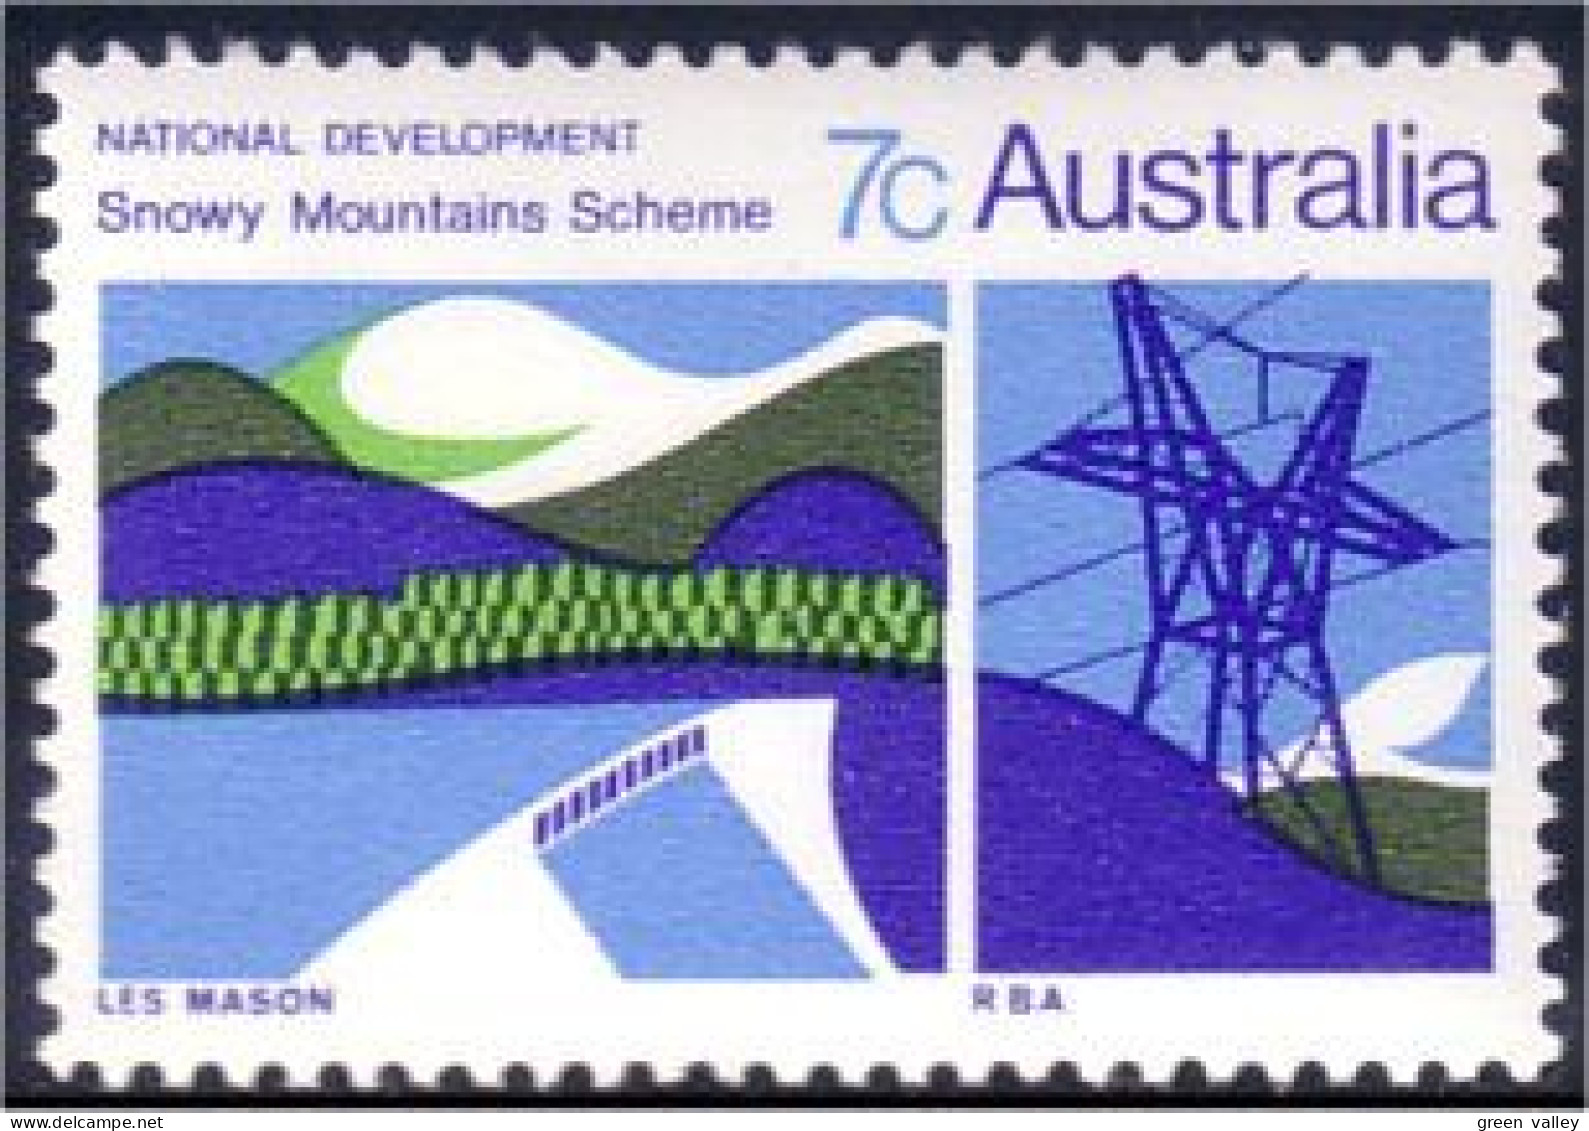 151 Australia Hydro Electricity Electricité MNH ** Neuf SC (AUS-146c) - Elektriciteit